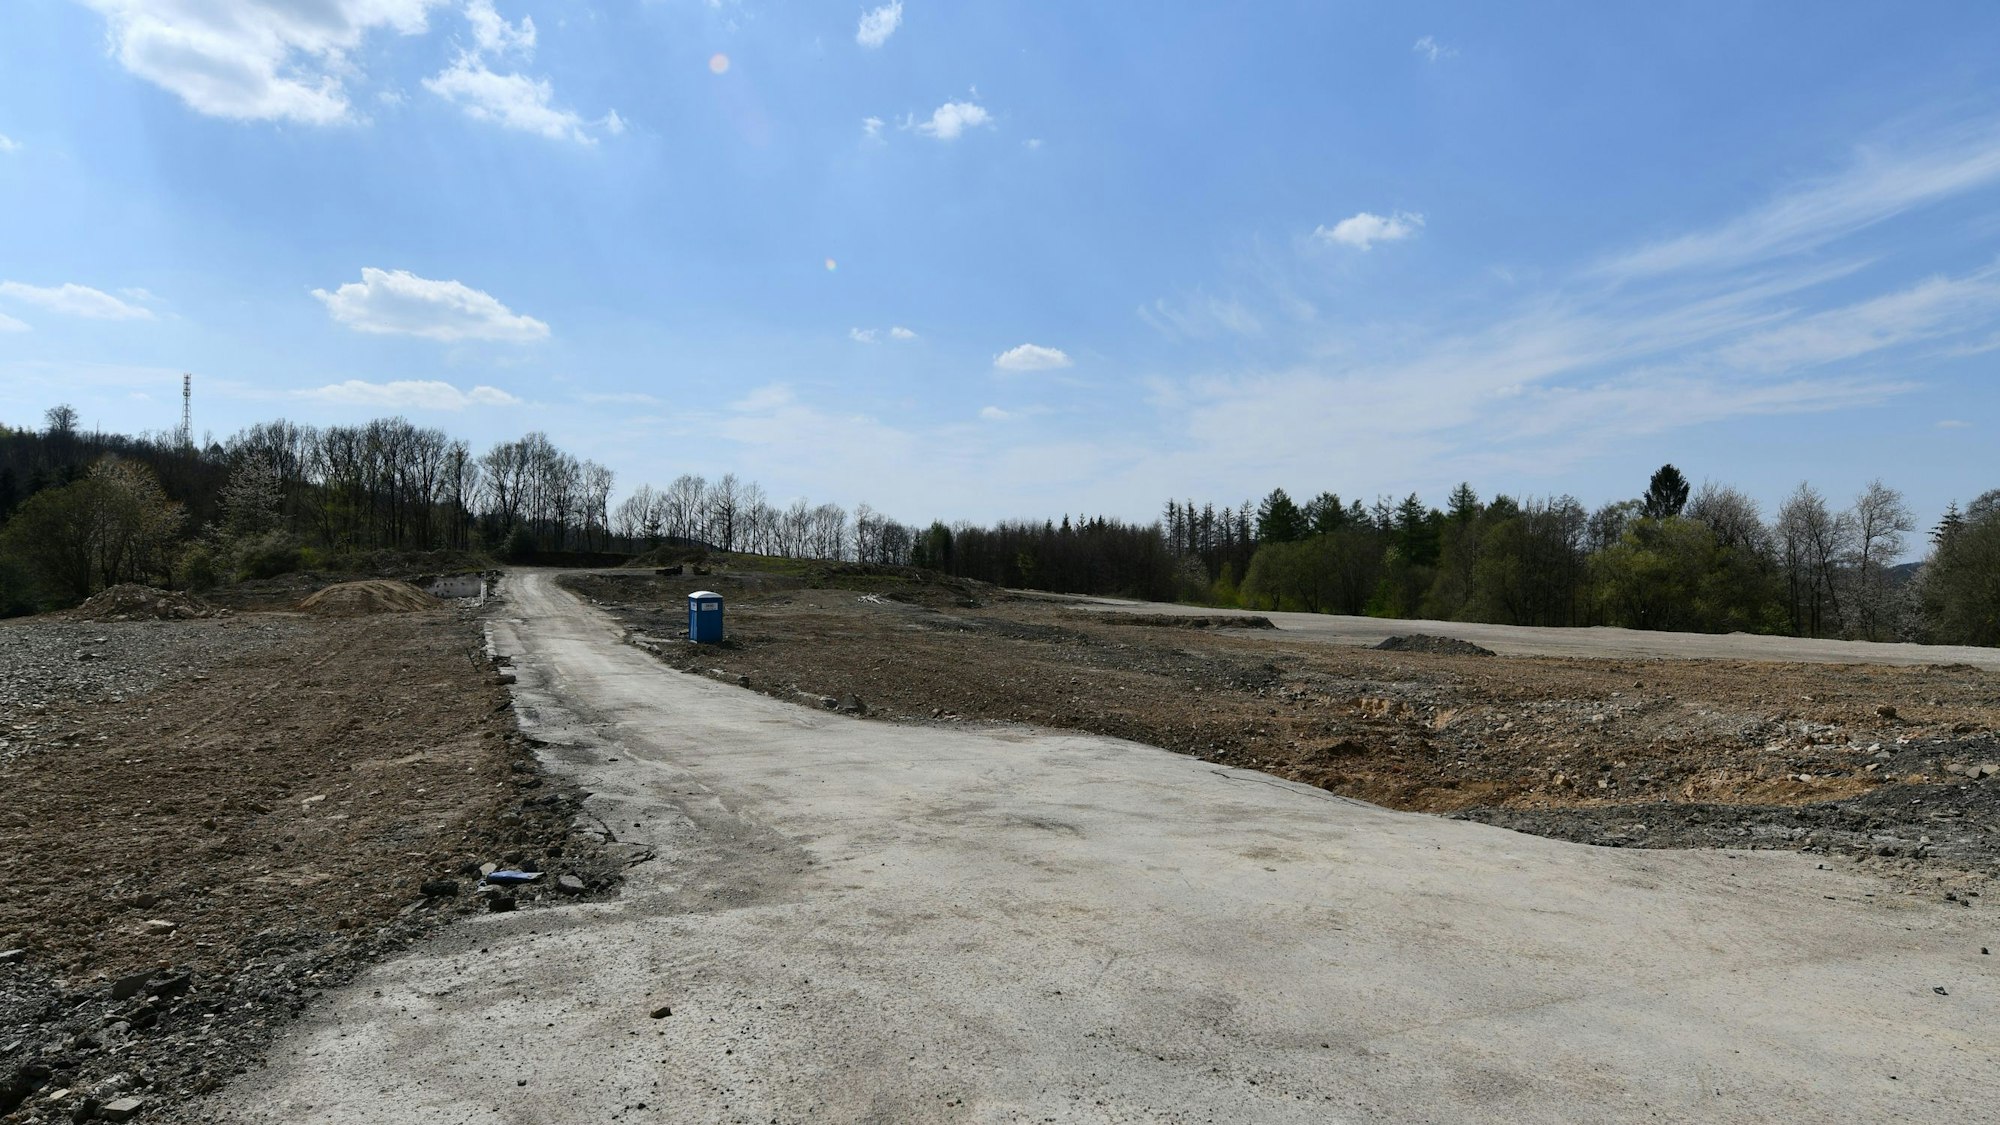 Ein leeres Feld aus Sand und Erde, in der Mitte ein Weg und ein Mülleimer. Im Hintergrund einige laublose Bäume vor strahlend blauem Himmel.